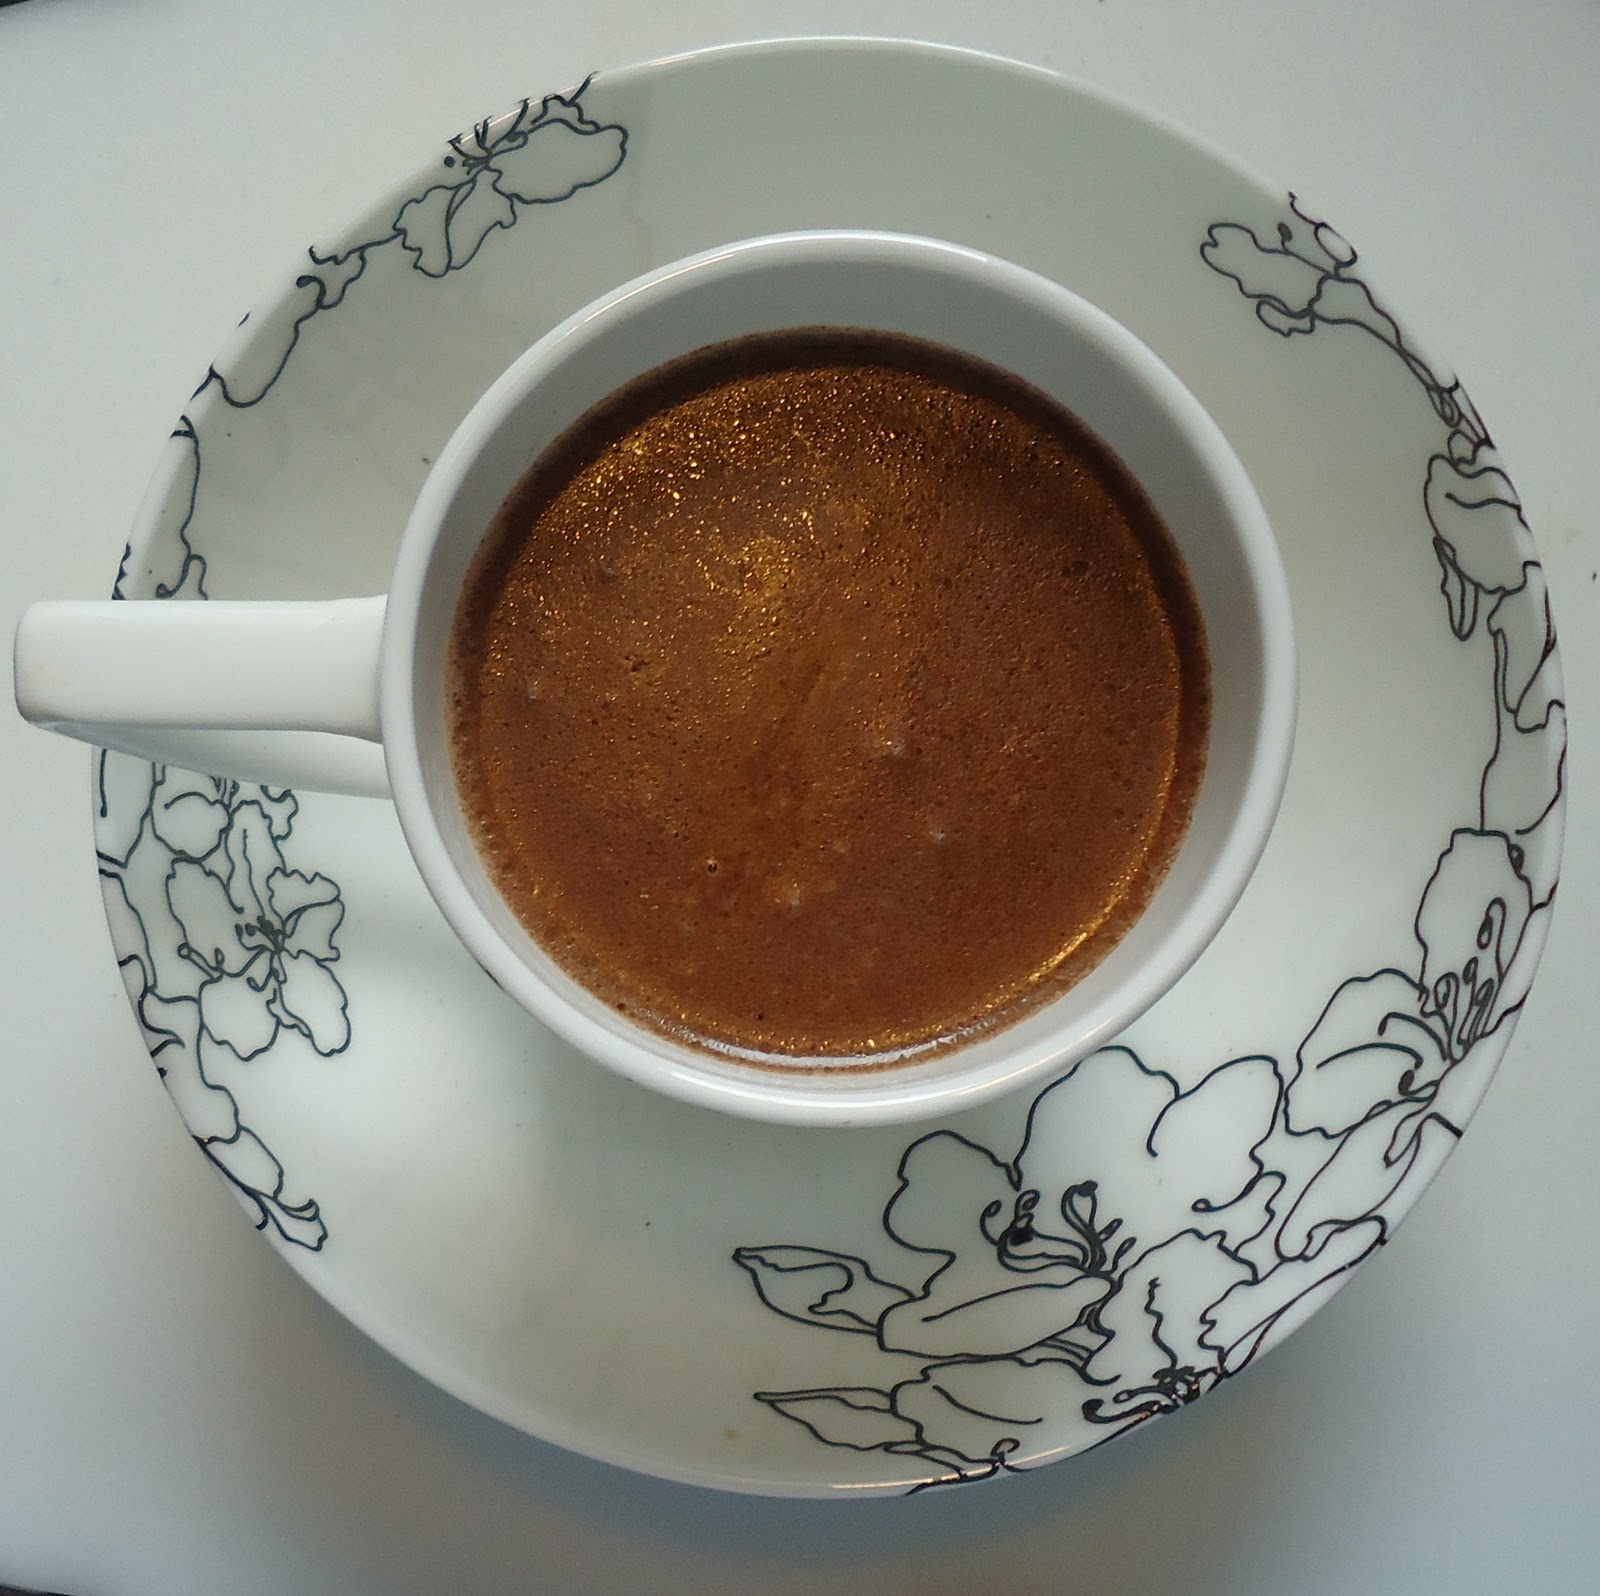 Haitian hot chocolate